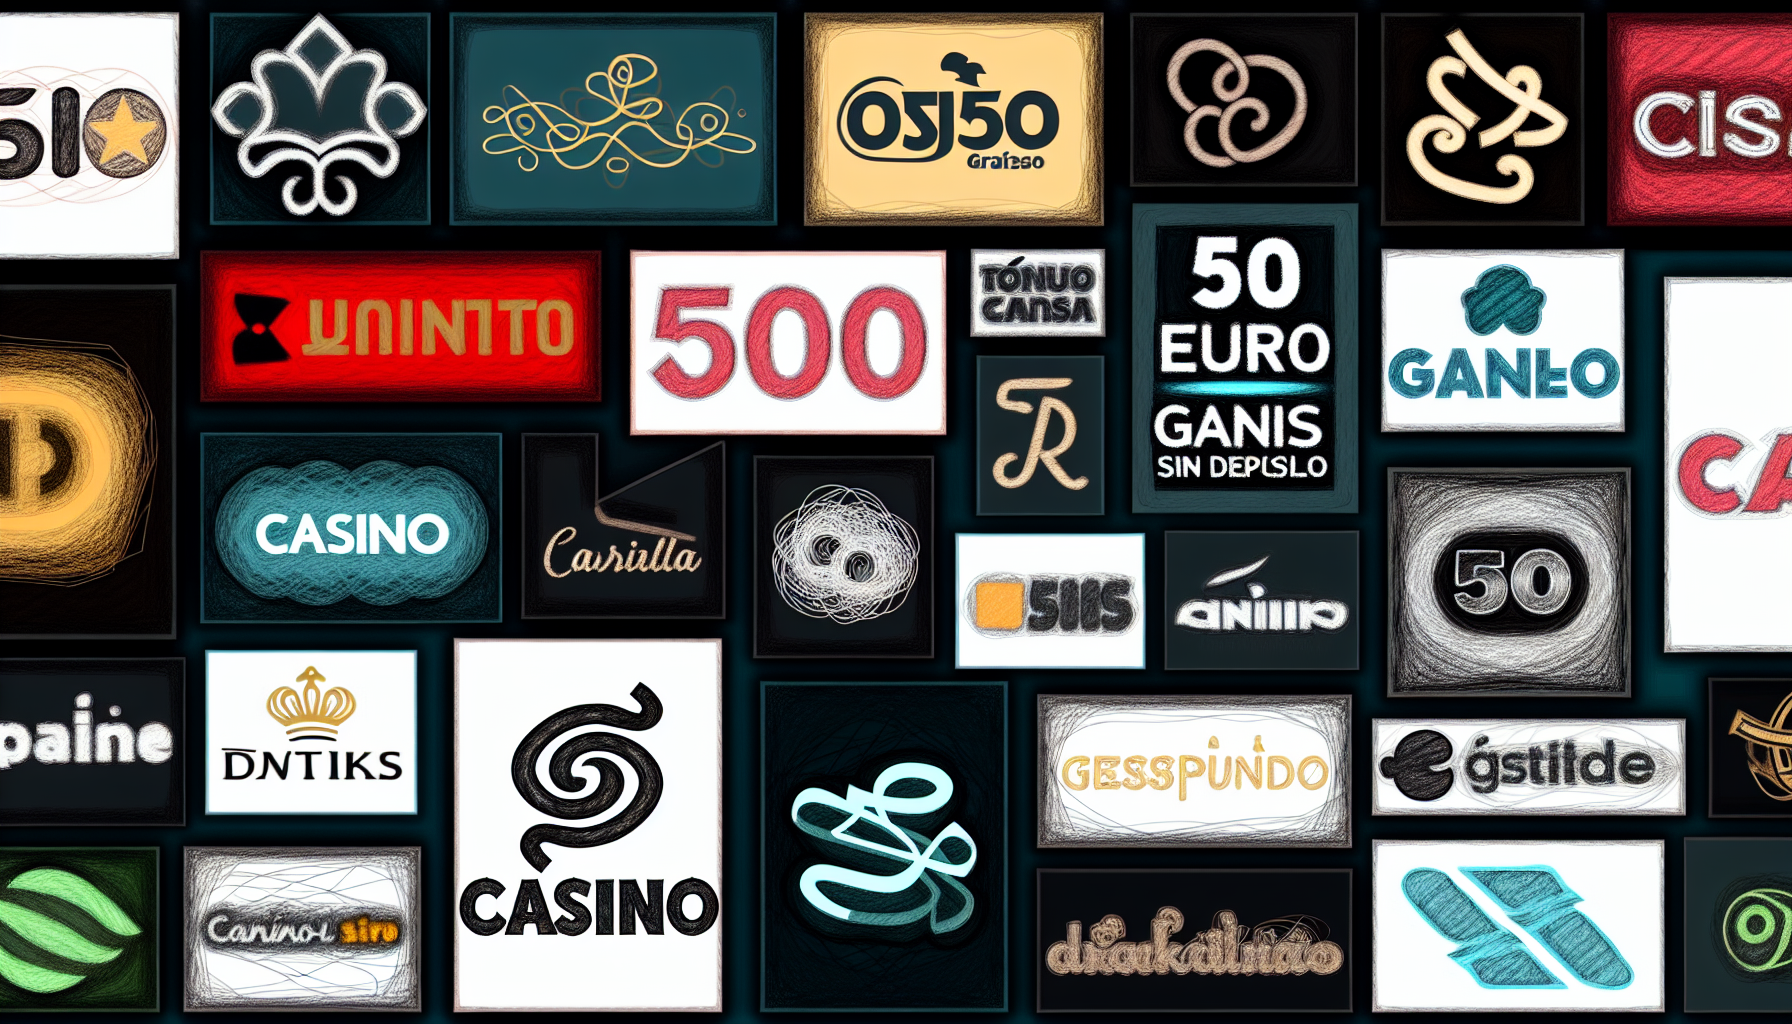 Selección de los mejores casinos con bonos de 50 euros gratis